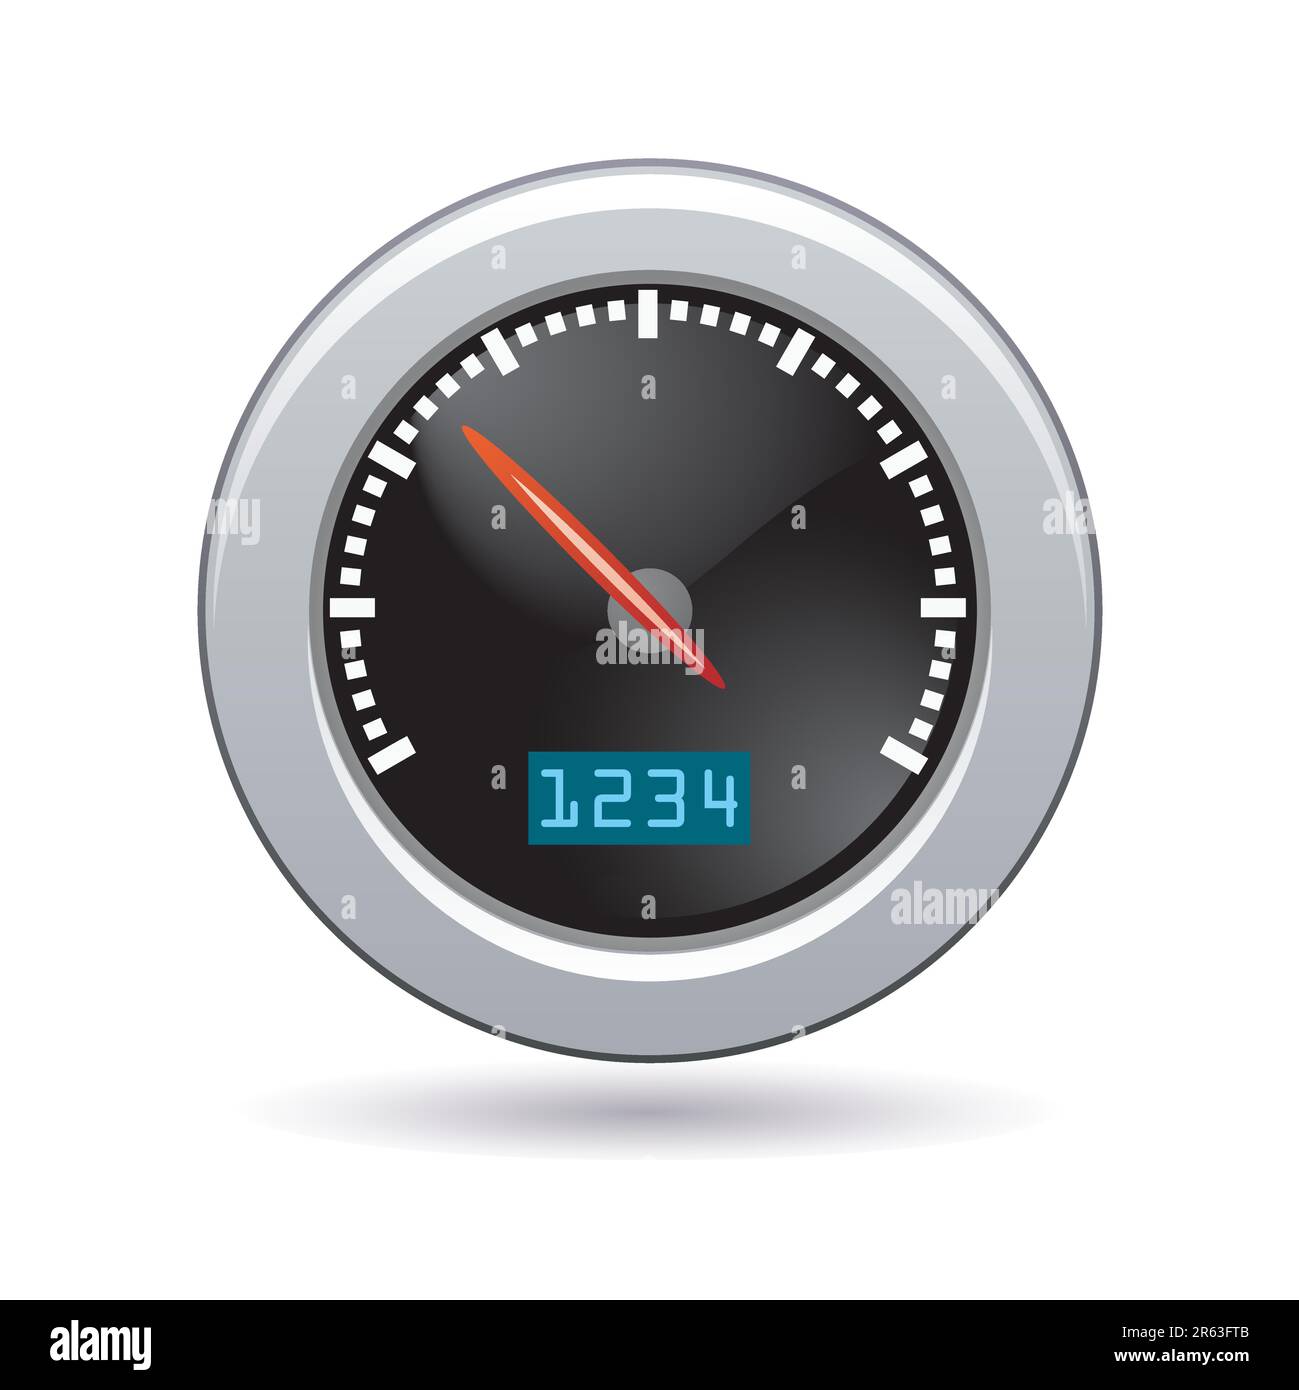 Speedometer icon Stock Vector